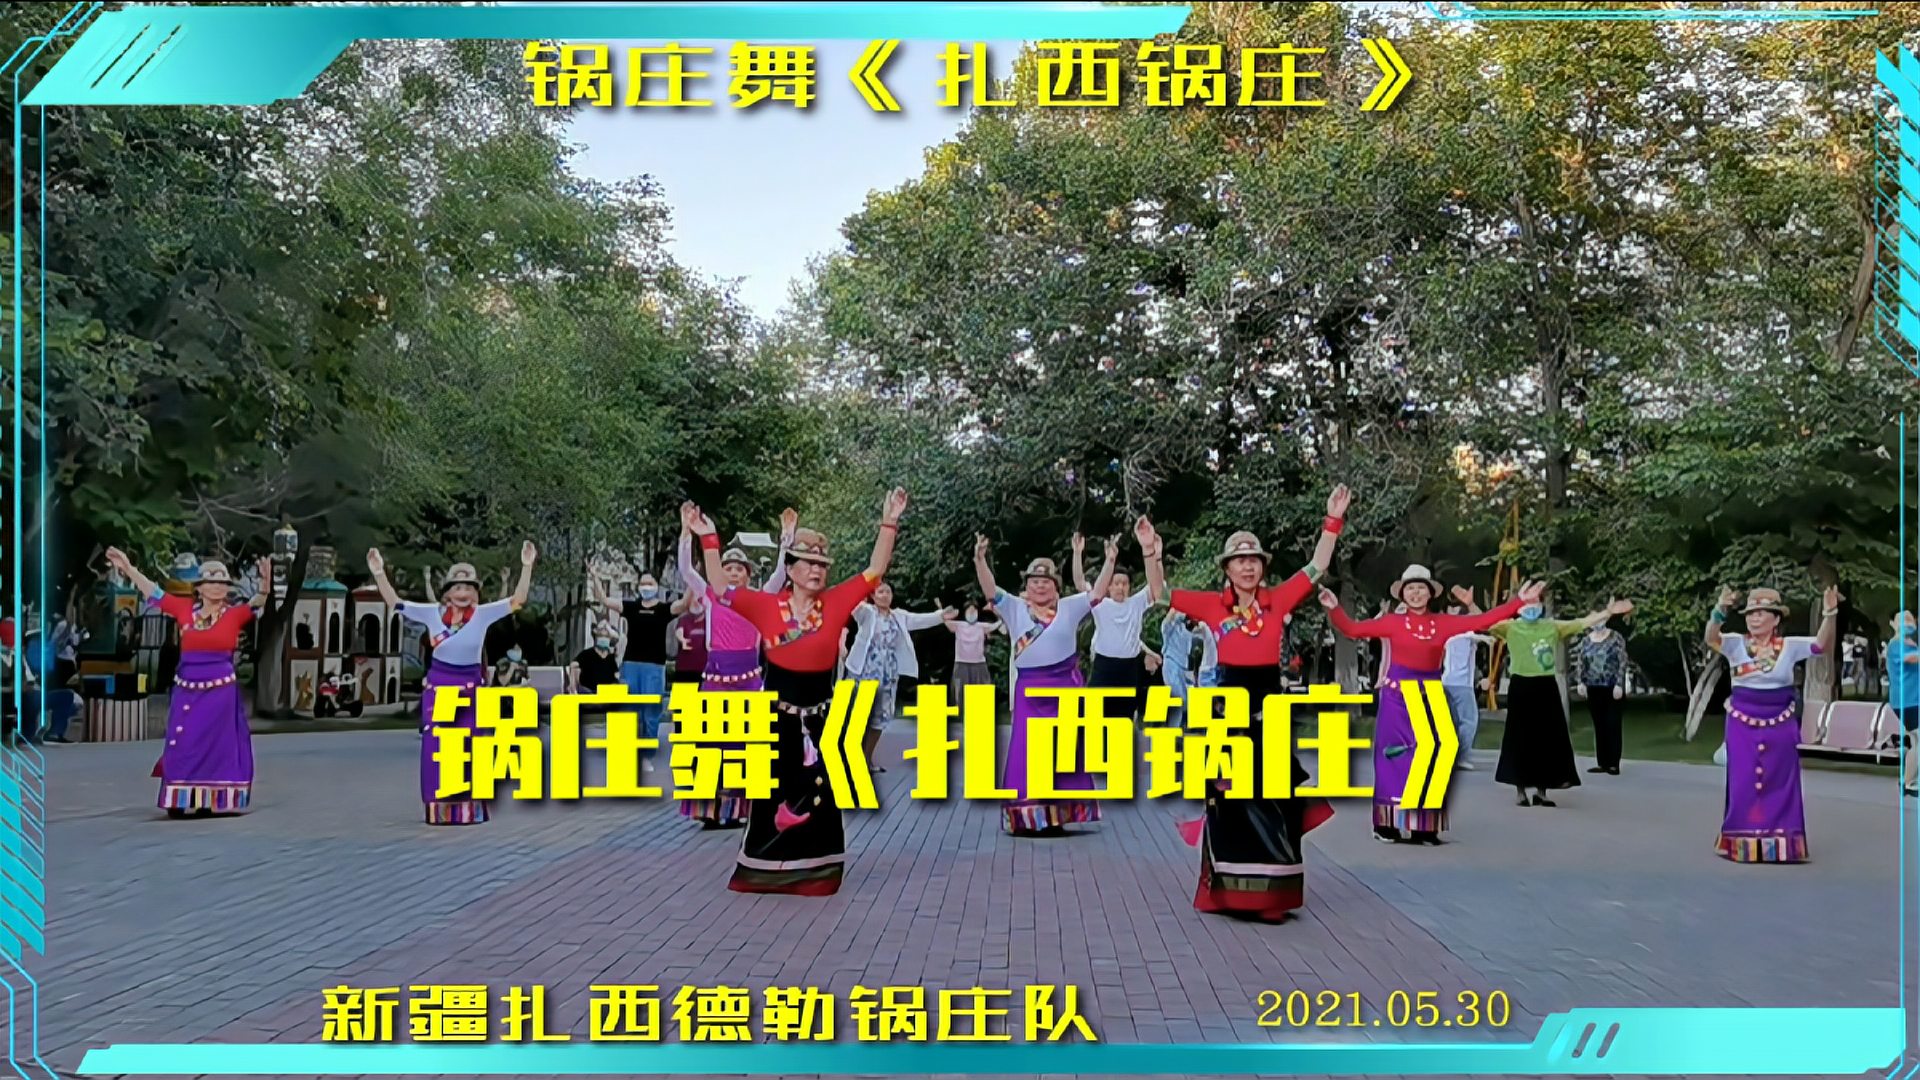 新疆扎西德勒锅庄队在公园学跳一只新曲锅庄舞